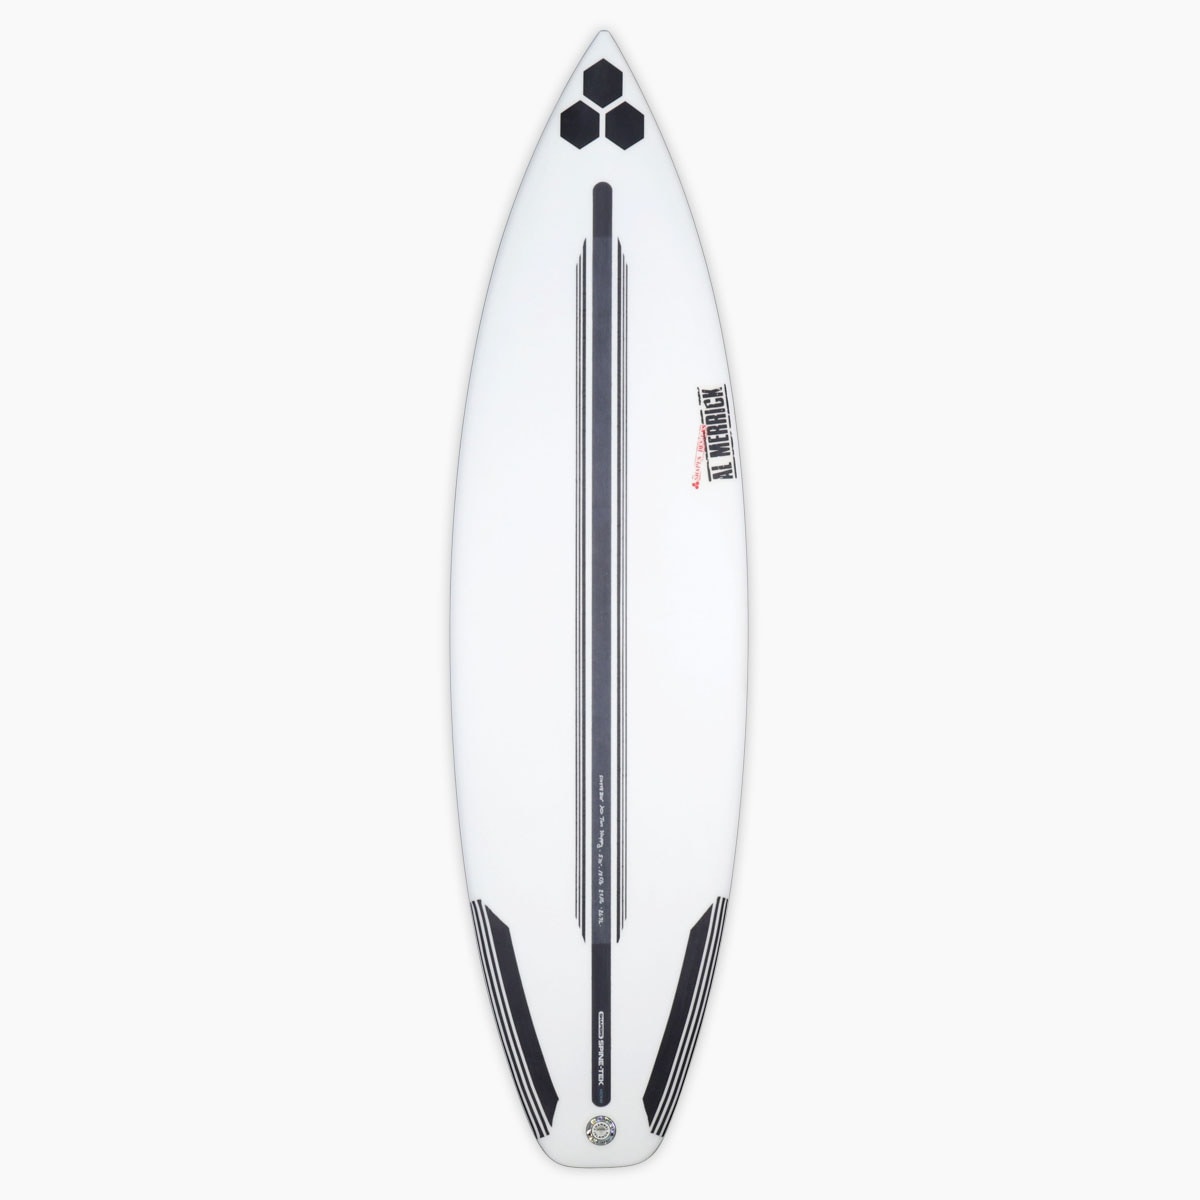 チャンネルアイランド チャネルアイランズ トゥーハッピー 5.11 ショートボード スパインテック カリフォルニアメイド トライフィン サーフィン 即納 Channel Islands SPINE TWO HAPPY FCS2 5'11  surfboard